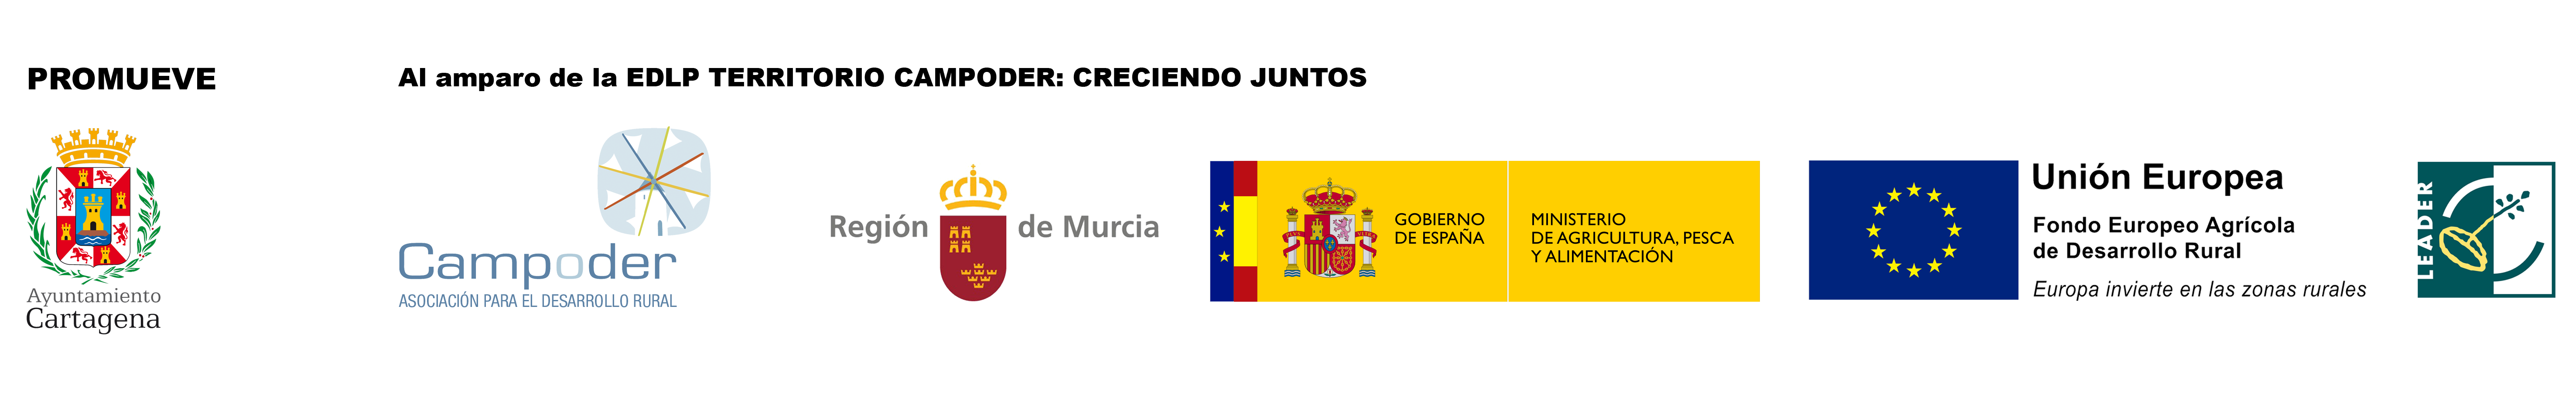 Logos Tesoros Rurales